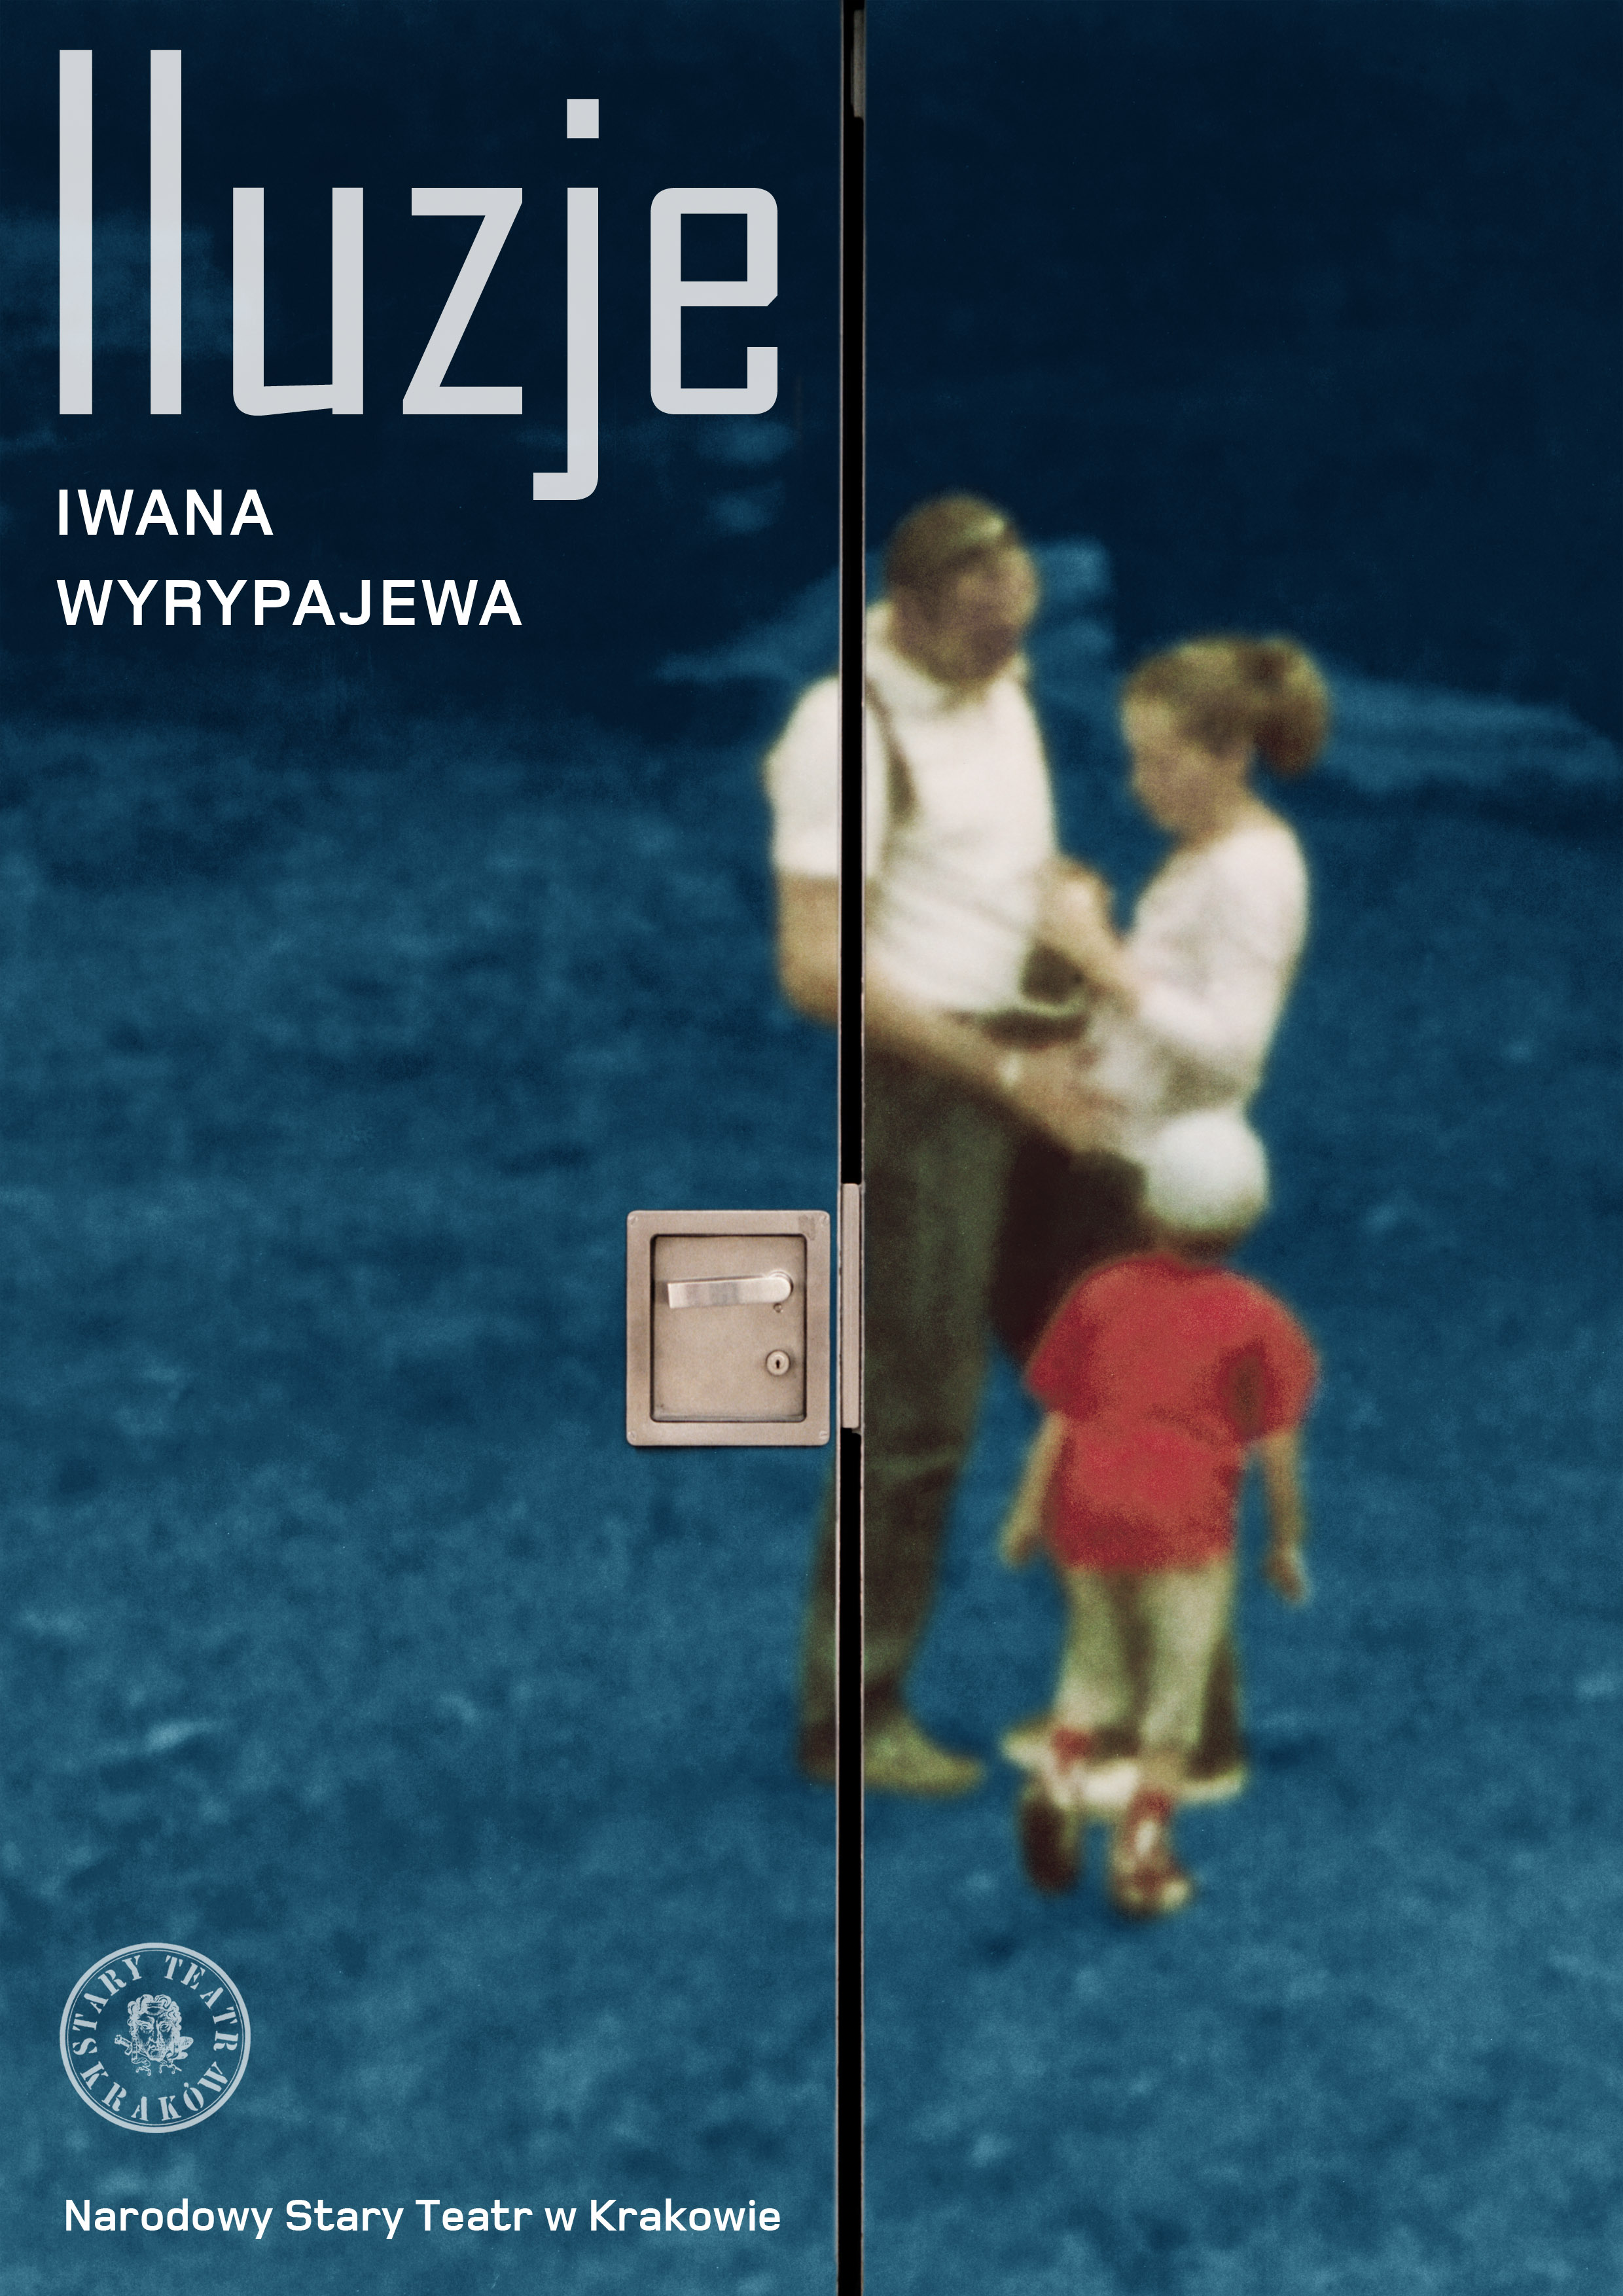 Iwan Wyrypajew, „Iluzje” (źródło: materiał prasowy teatru)